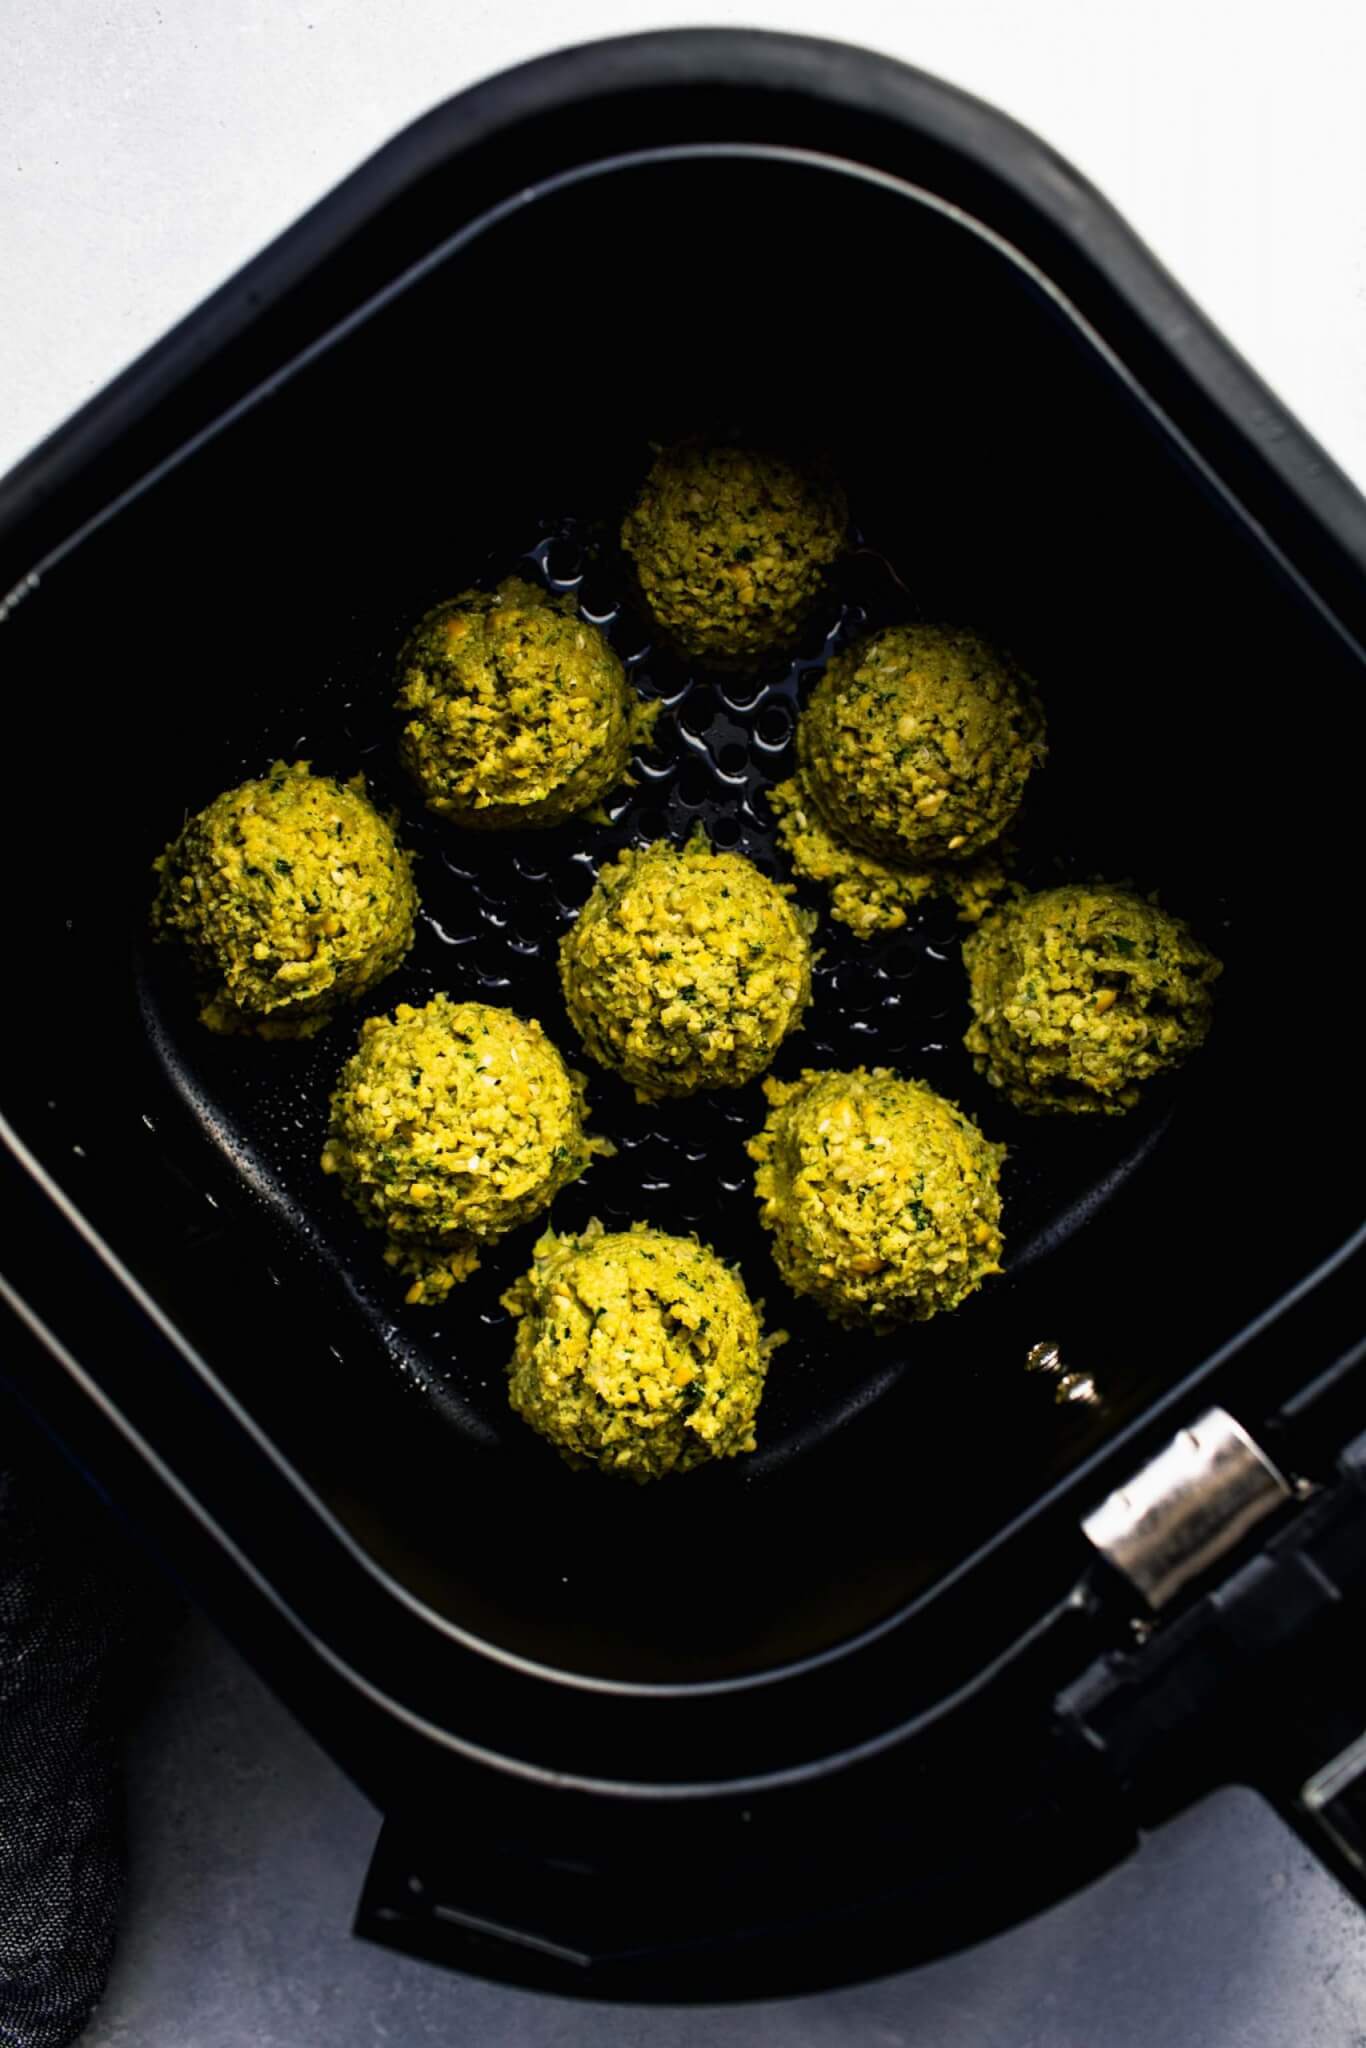 Uncooked falafel balls in air fryer basket.